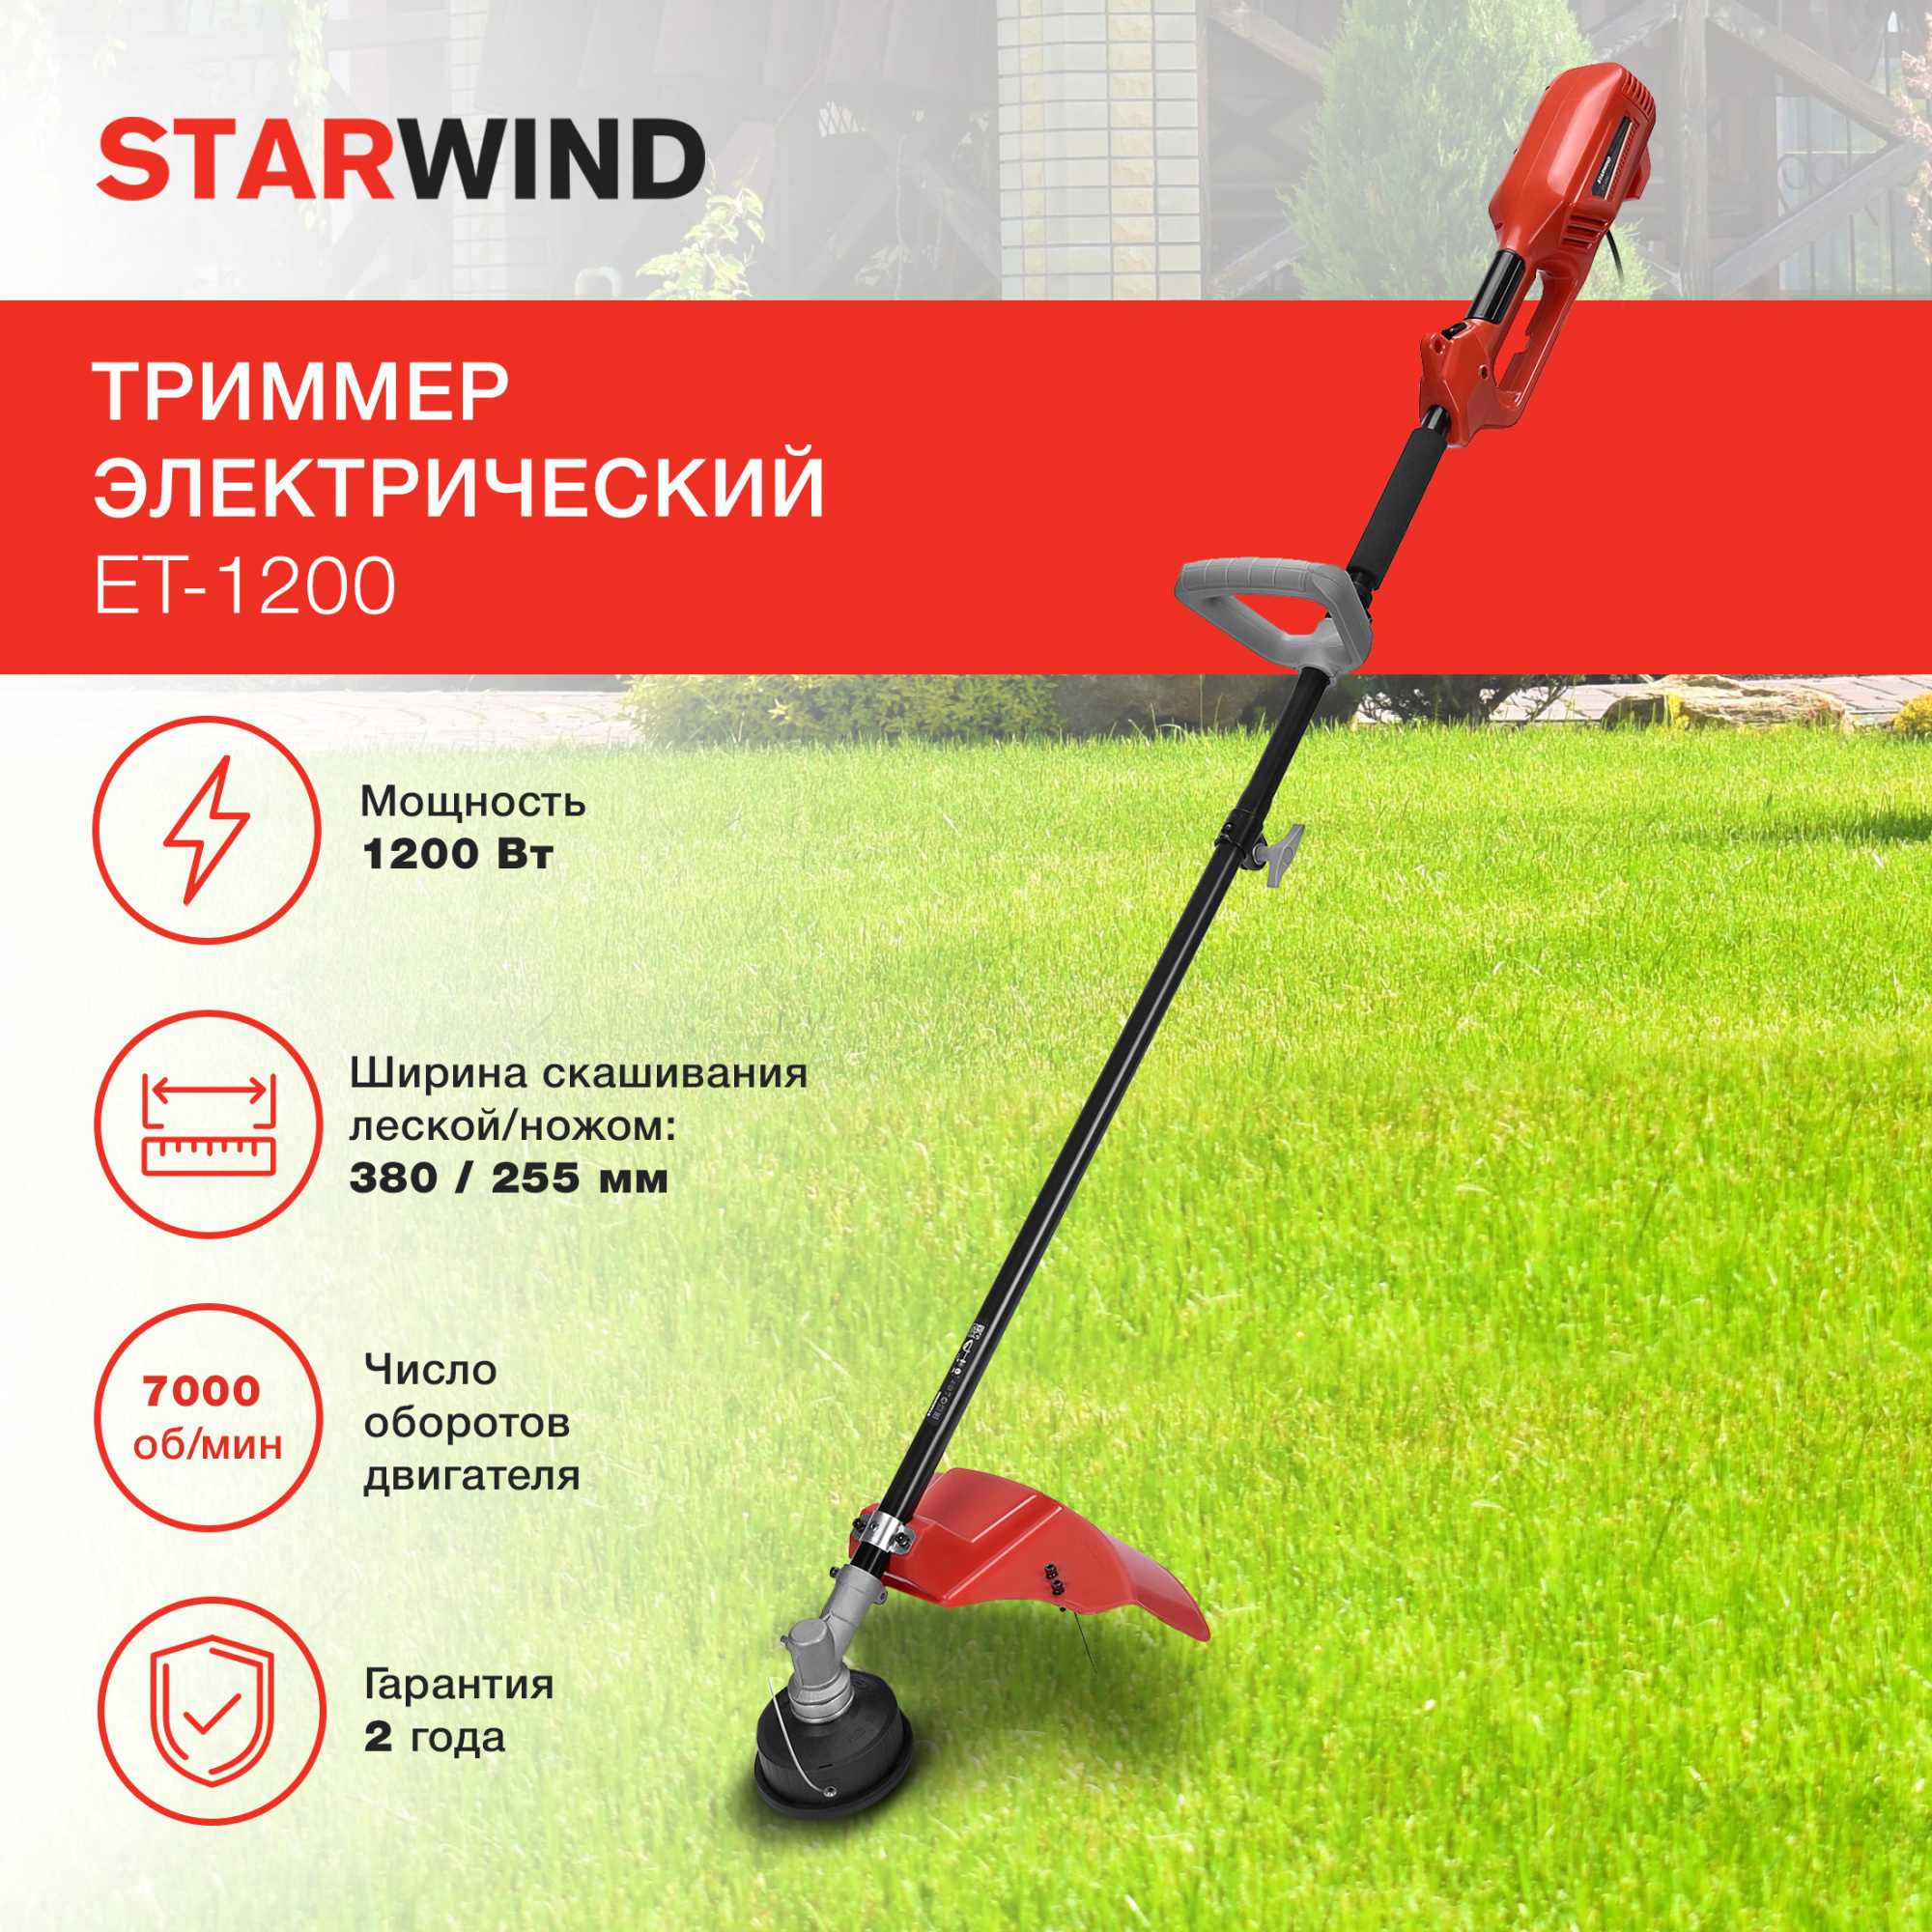 Триммер садовый электрический Starwind ET-1200 для кошения травы, 1200 Вт, леска и нож